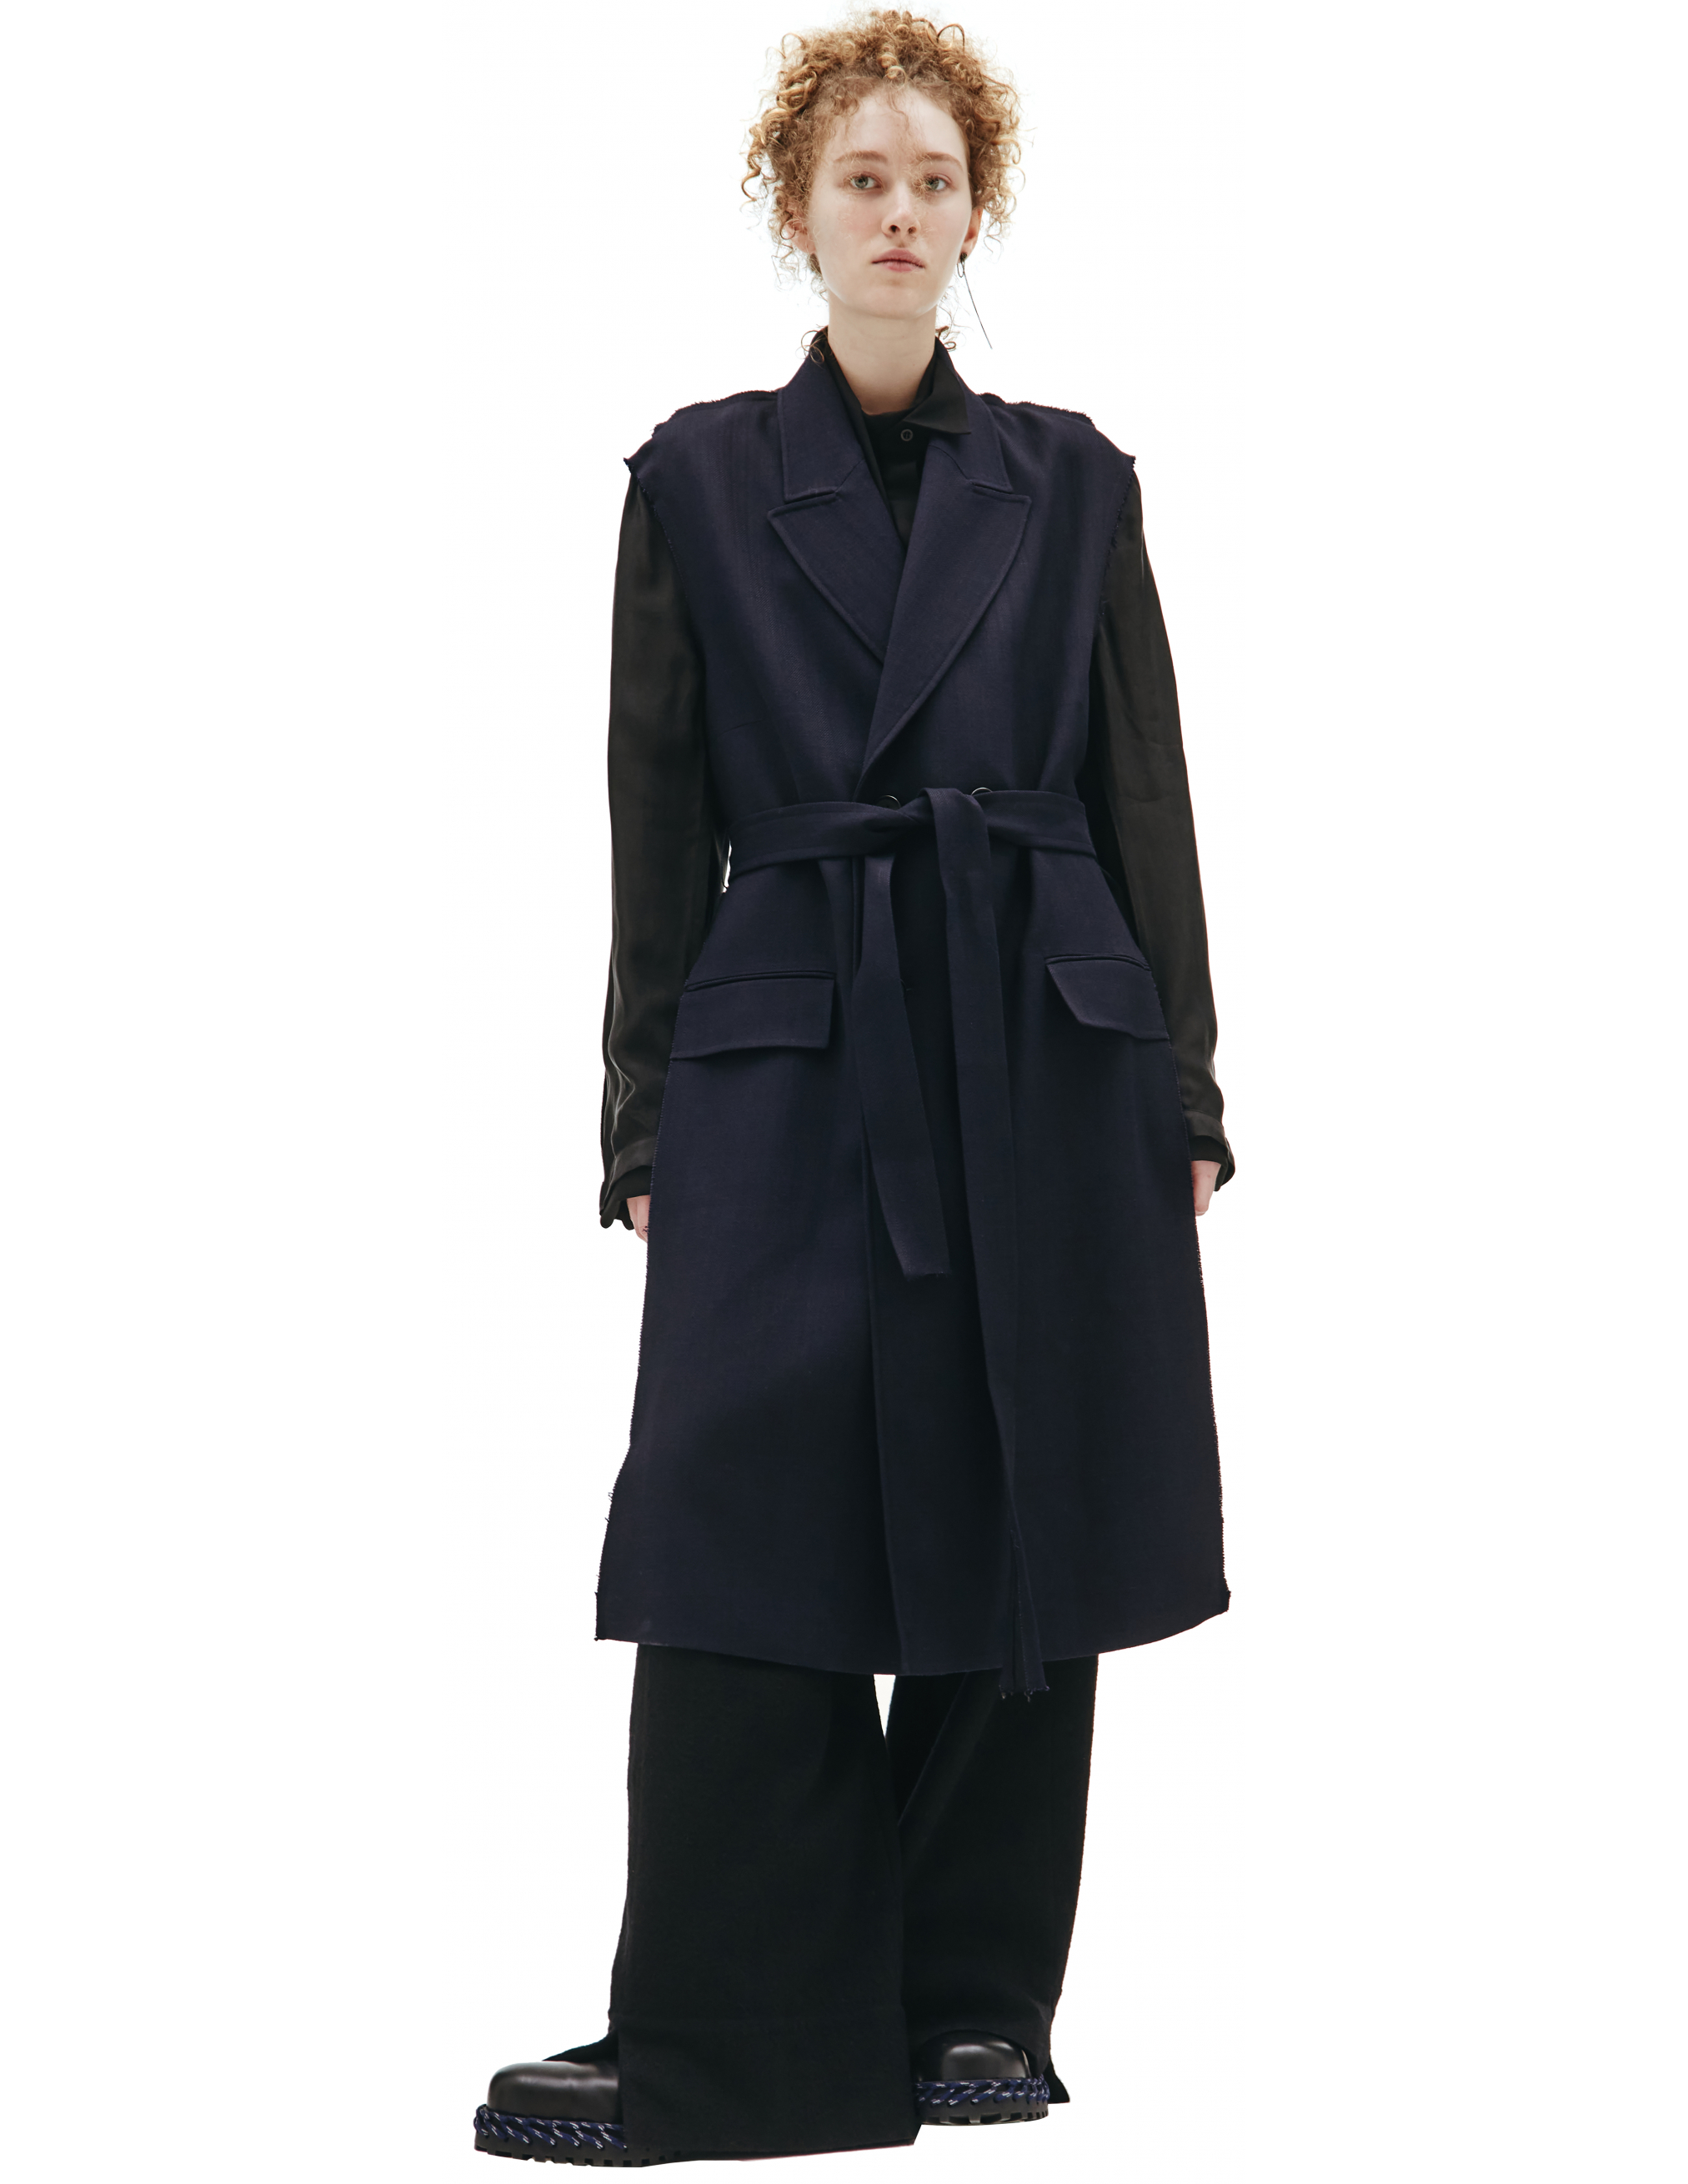 Двуцветное пальто с поясом Maison Margiela S51AA0290/S53690/511, размер 40